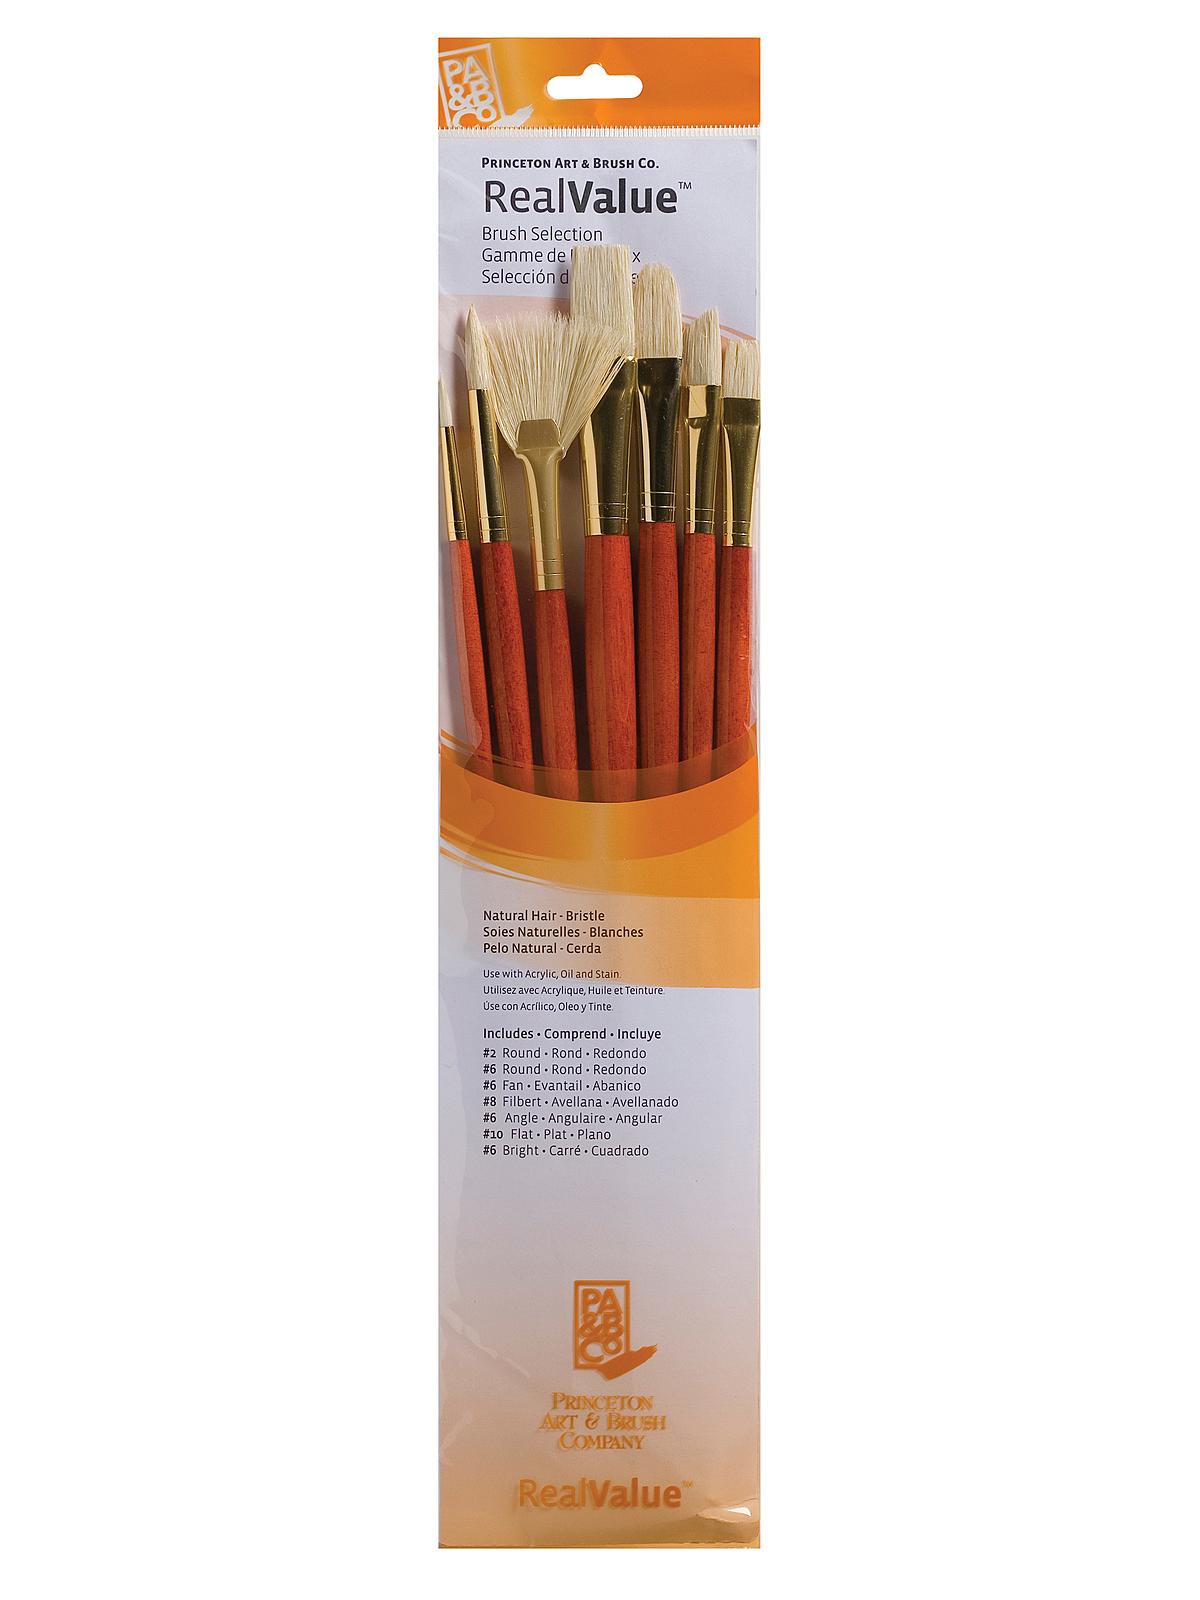 Real Value Series 9000 Orange Handled Brush Sets 9154 Set Of 7